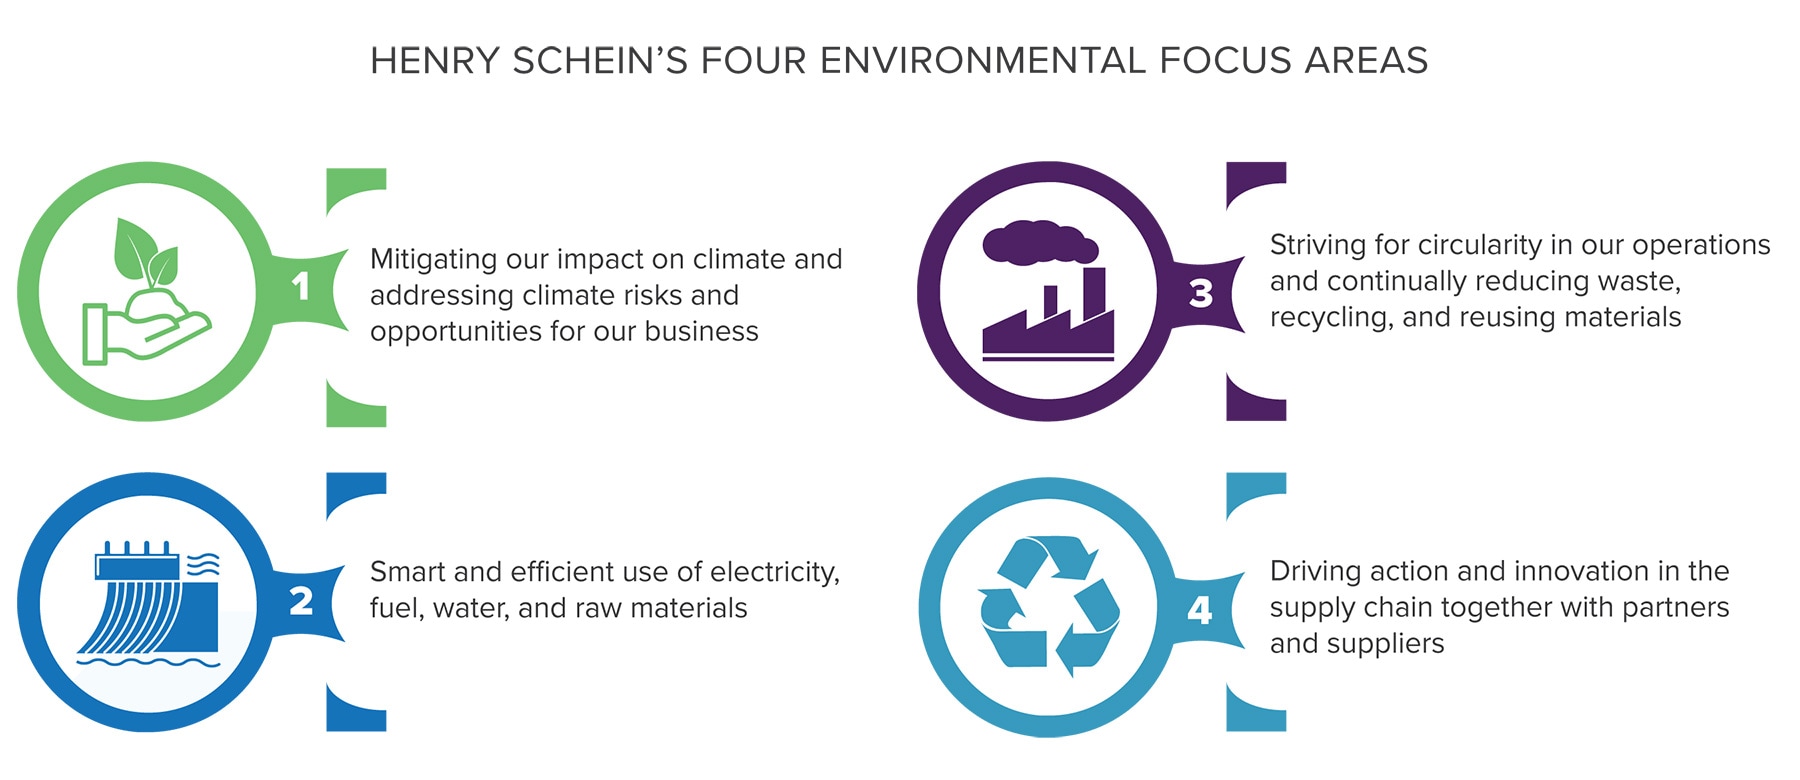 Henry Schein's Four Environmental Focus Areas